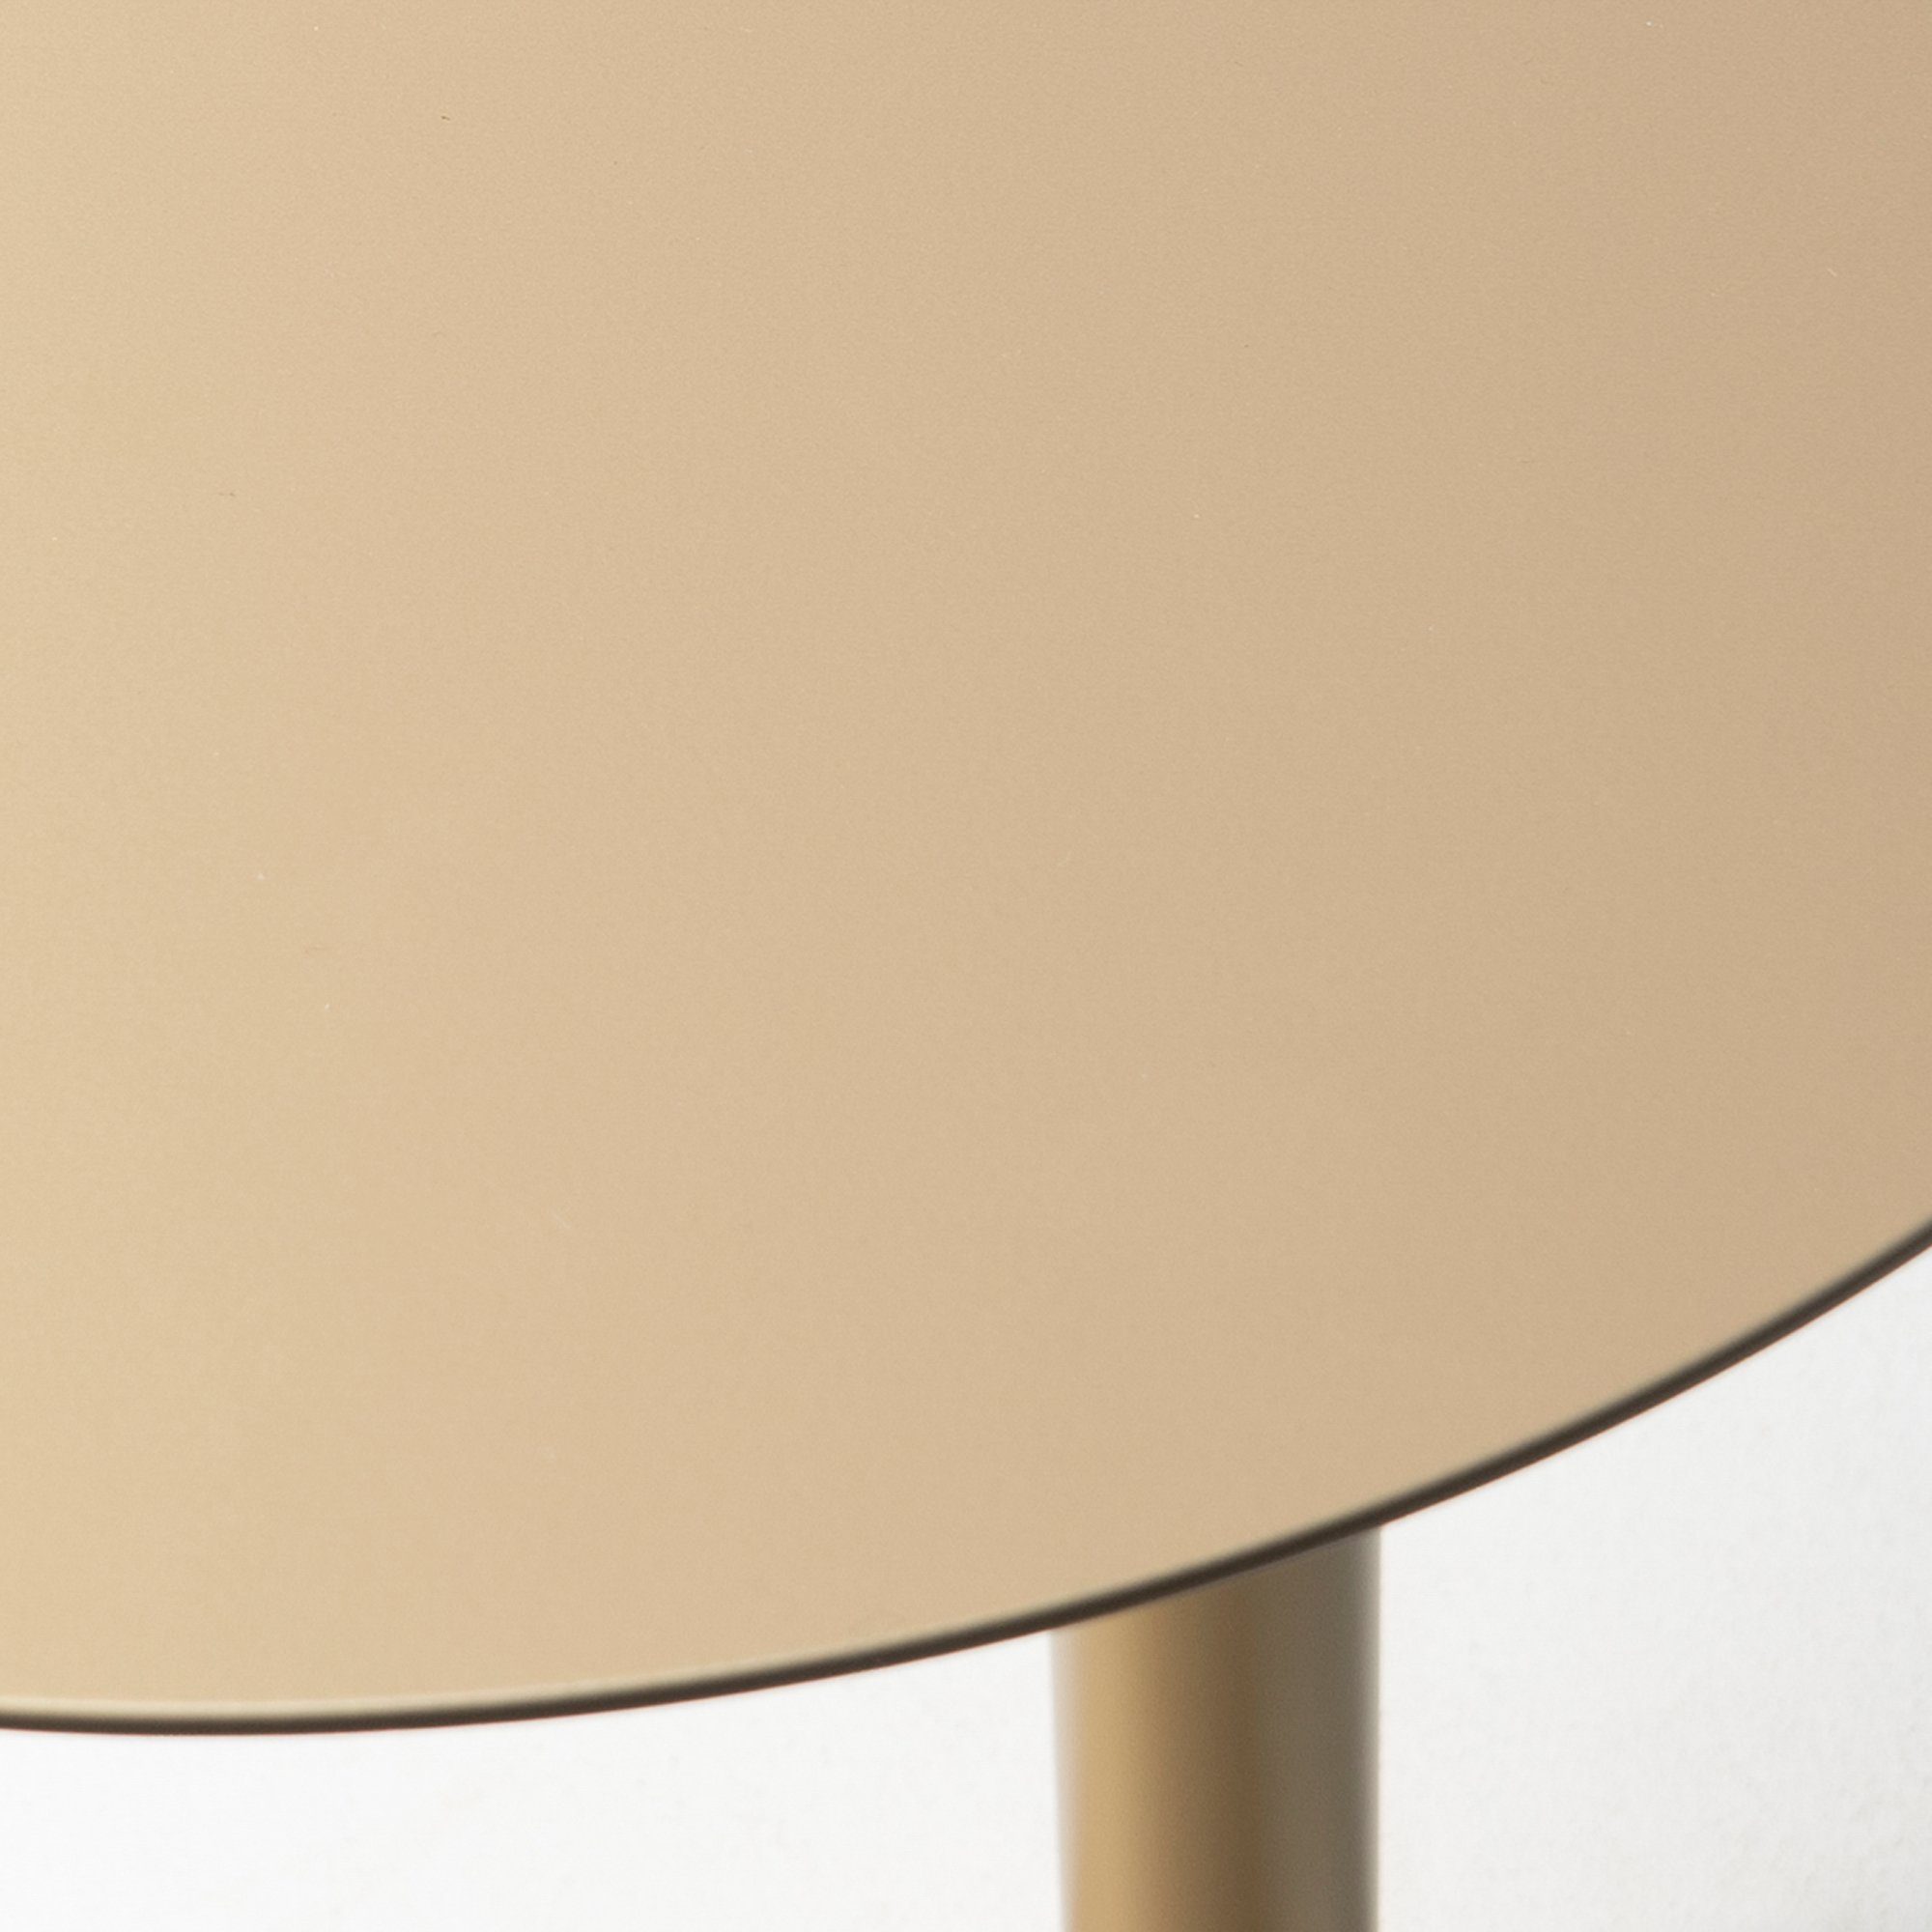 Torna Design - Torna Beistelltisch Beistelltisch Champagne SUNSET 50 Furniture 40x50x40cm